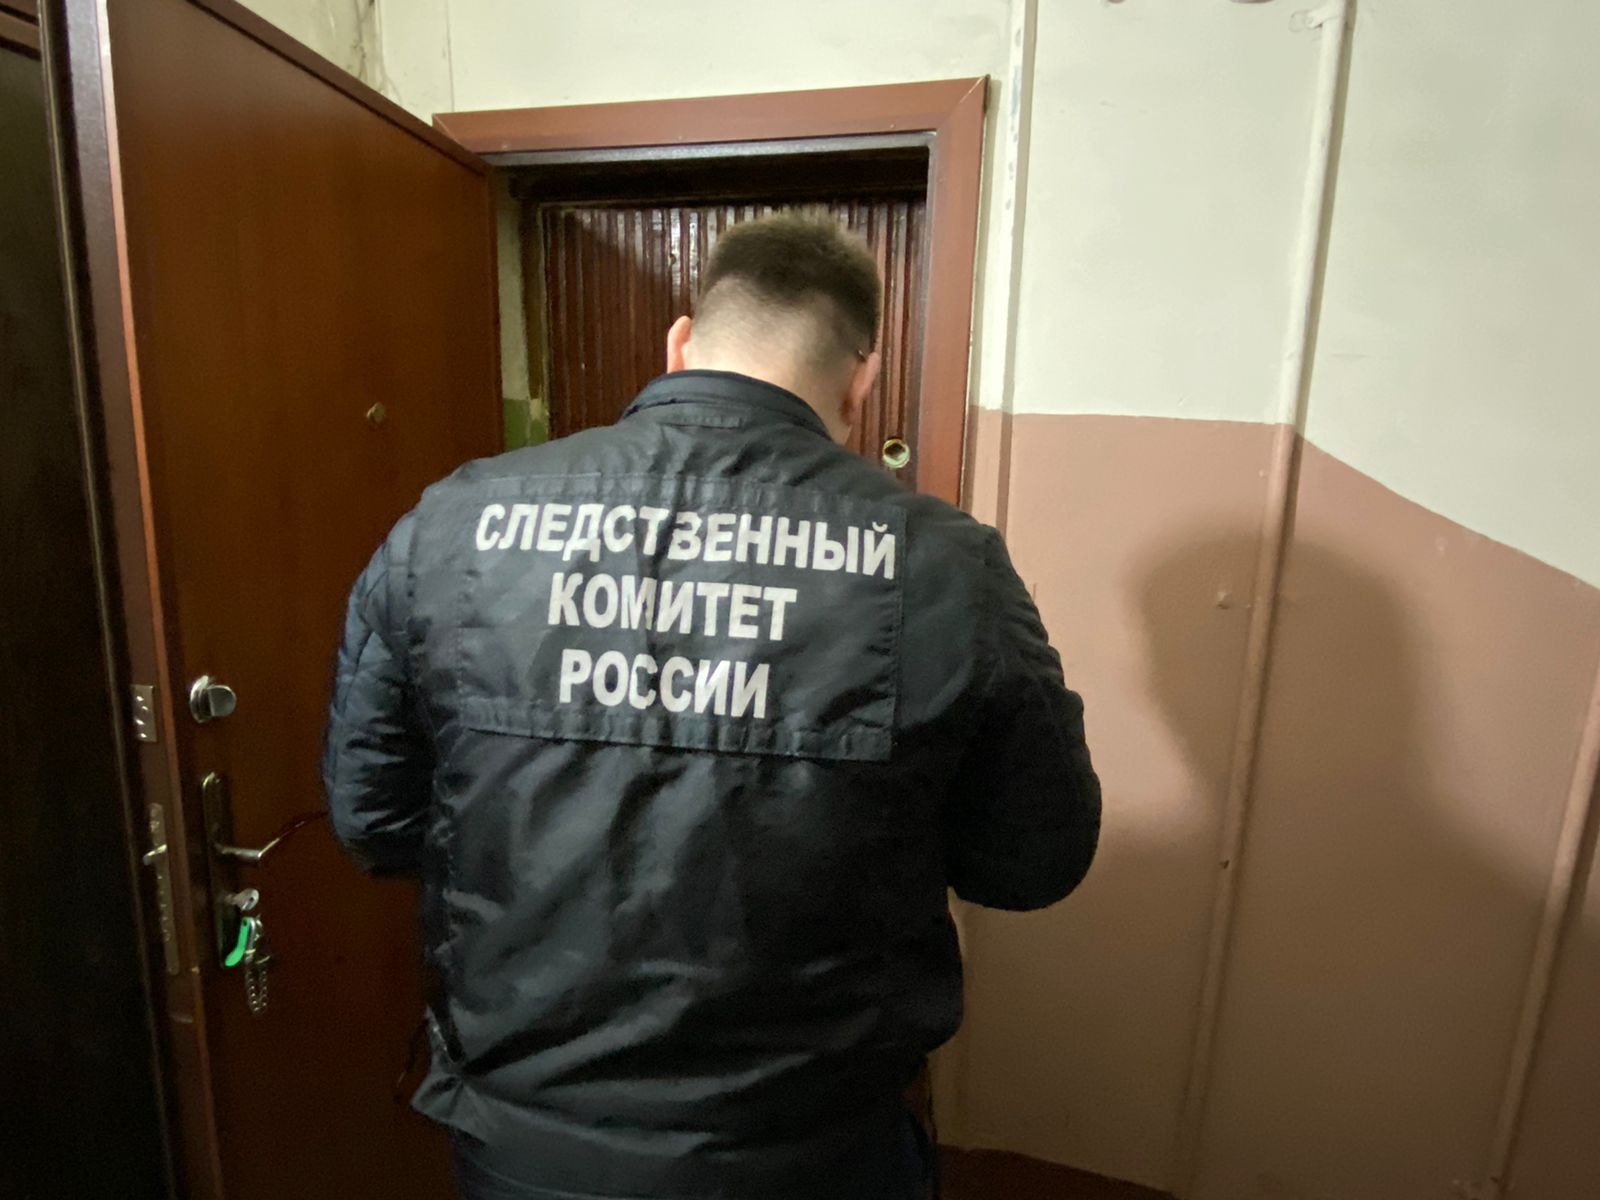 "Лежал у всех на виду": в Кирове у входа в общежитие нашли тело мужчины